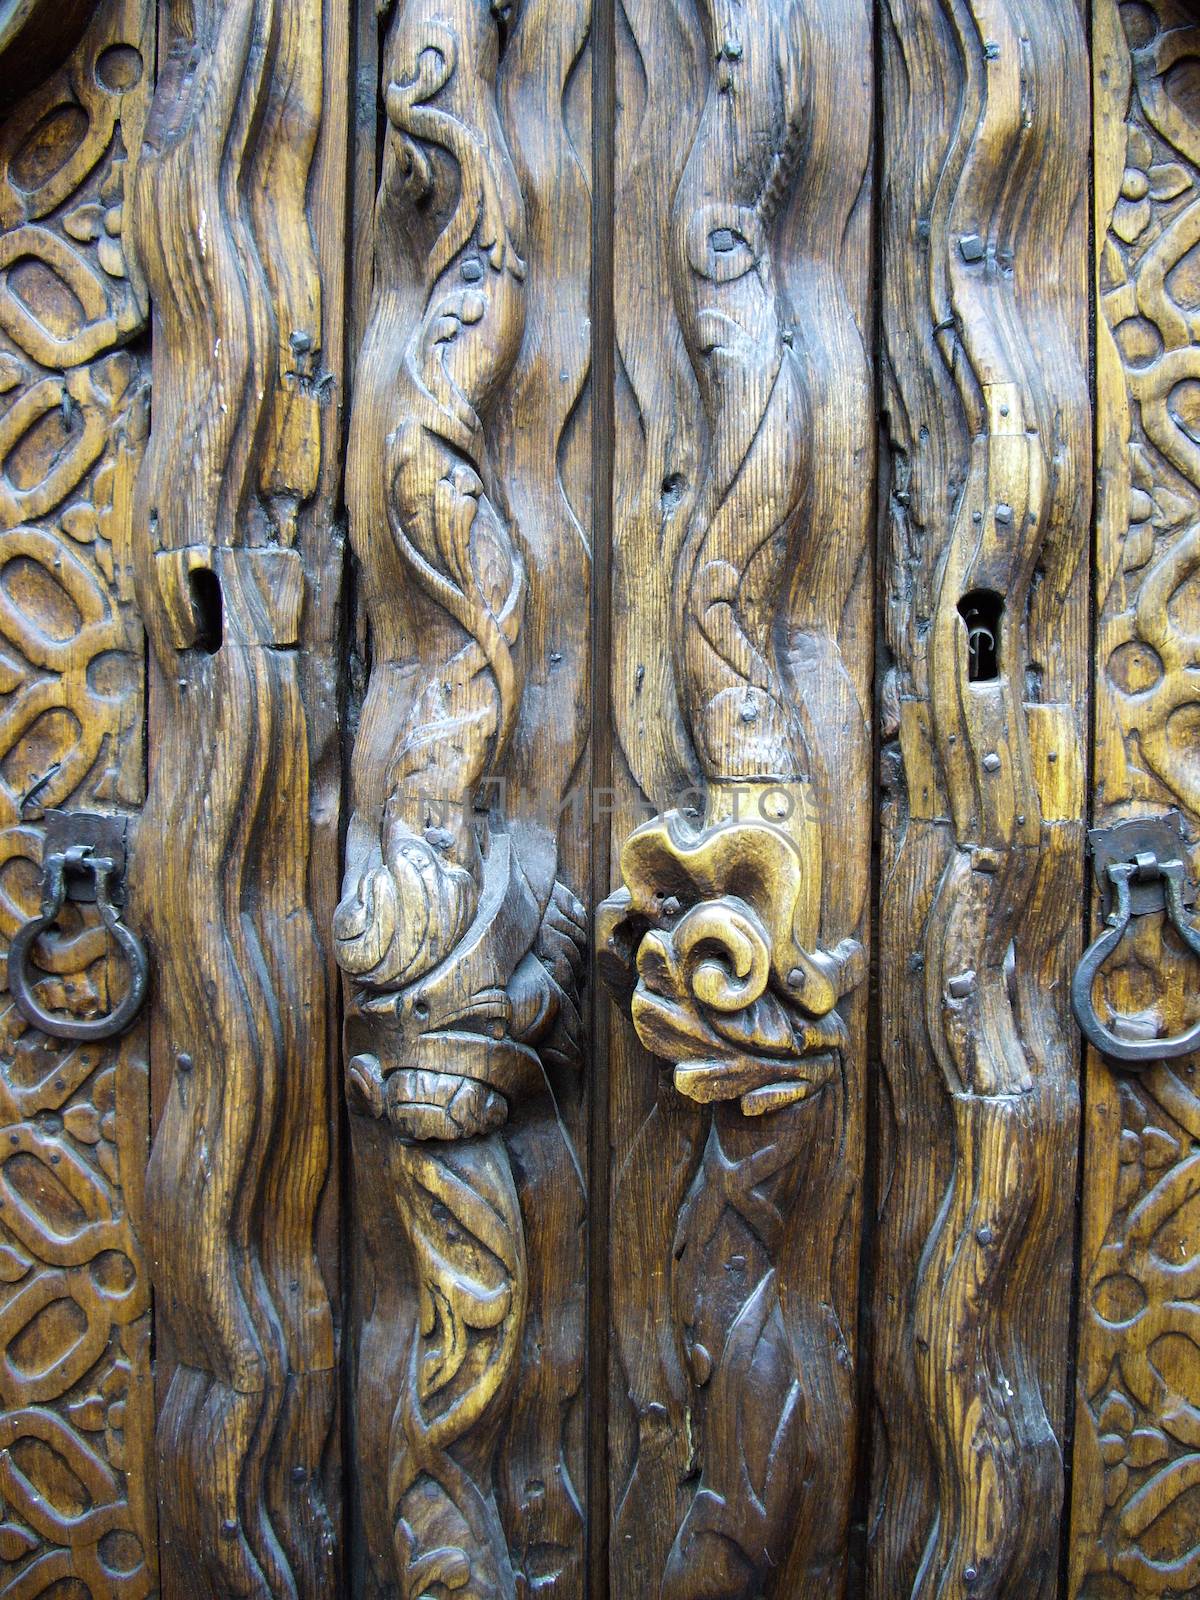 Carved wooden door in Mexico